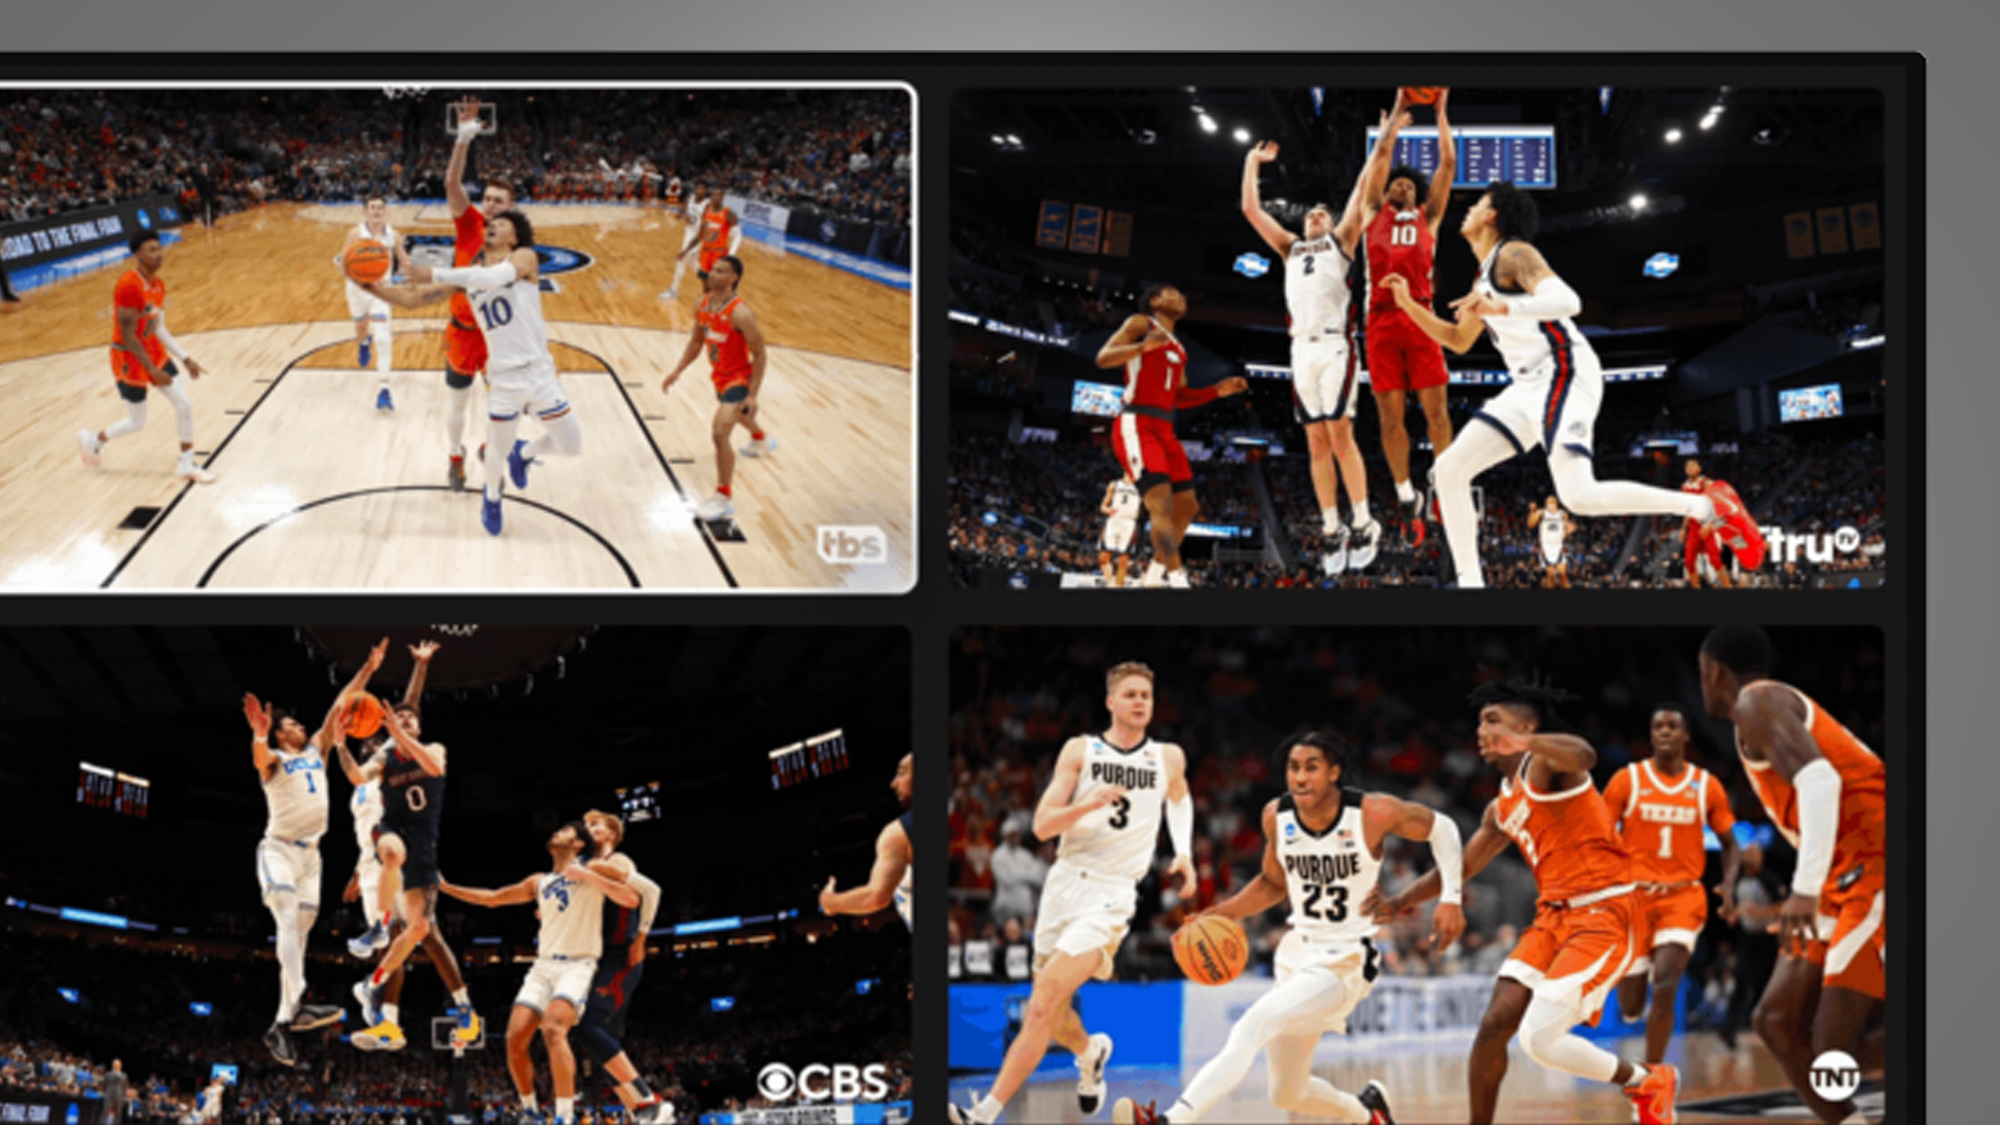 Un écran de télévision sur fond gris montrant YouTube TV multiview pendant le basket-ball